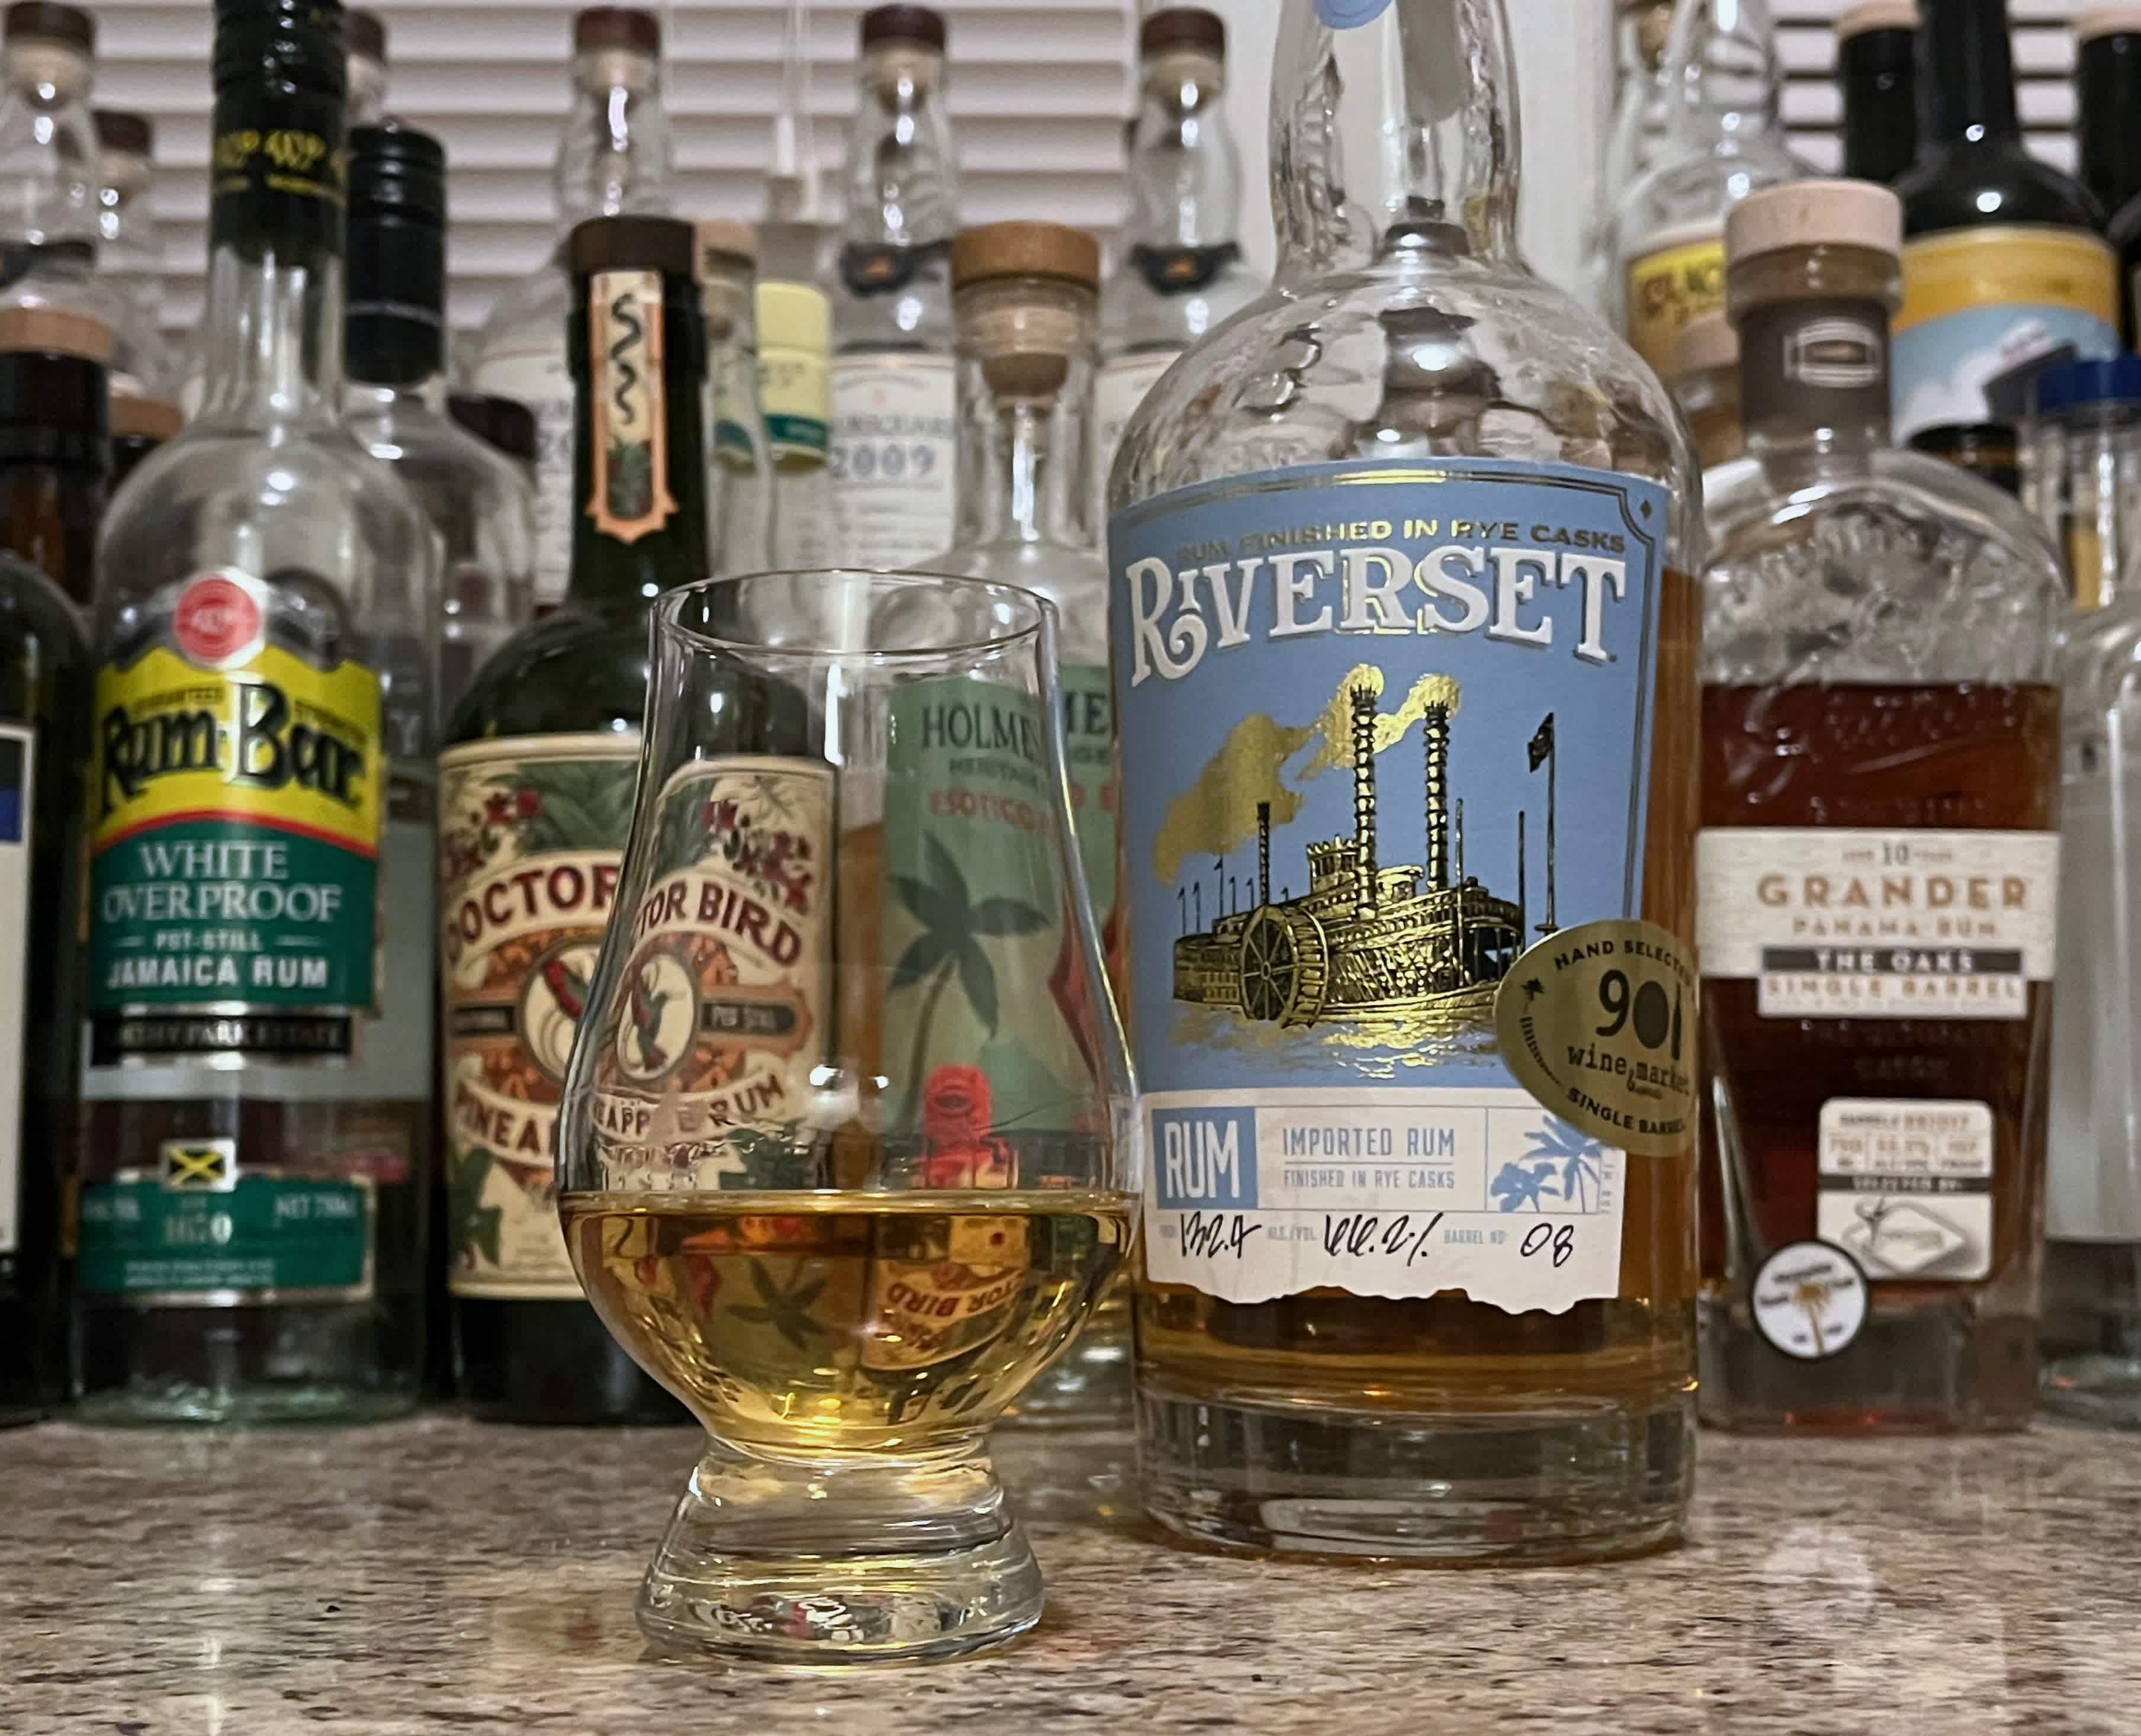 A bottle of Riverset Rum Barrel #08 next to a glencairn of rum